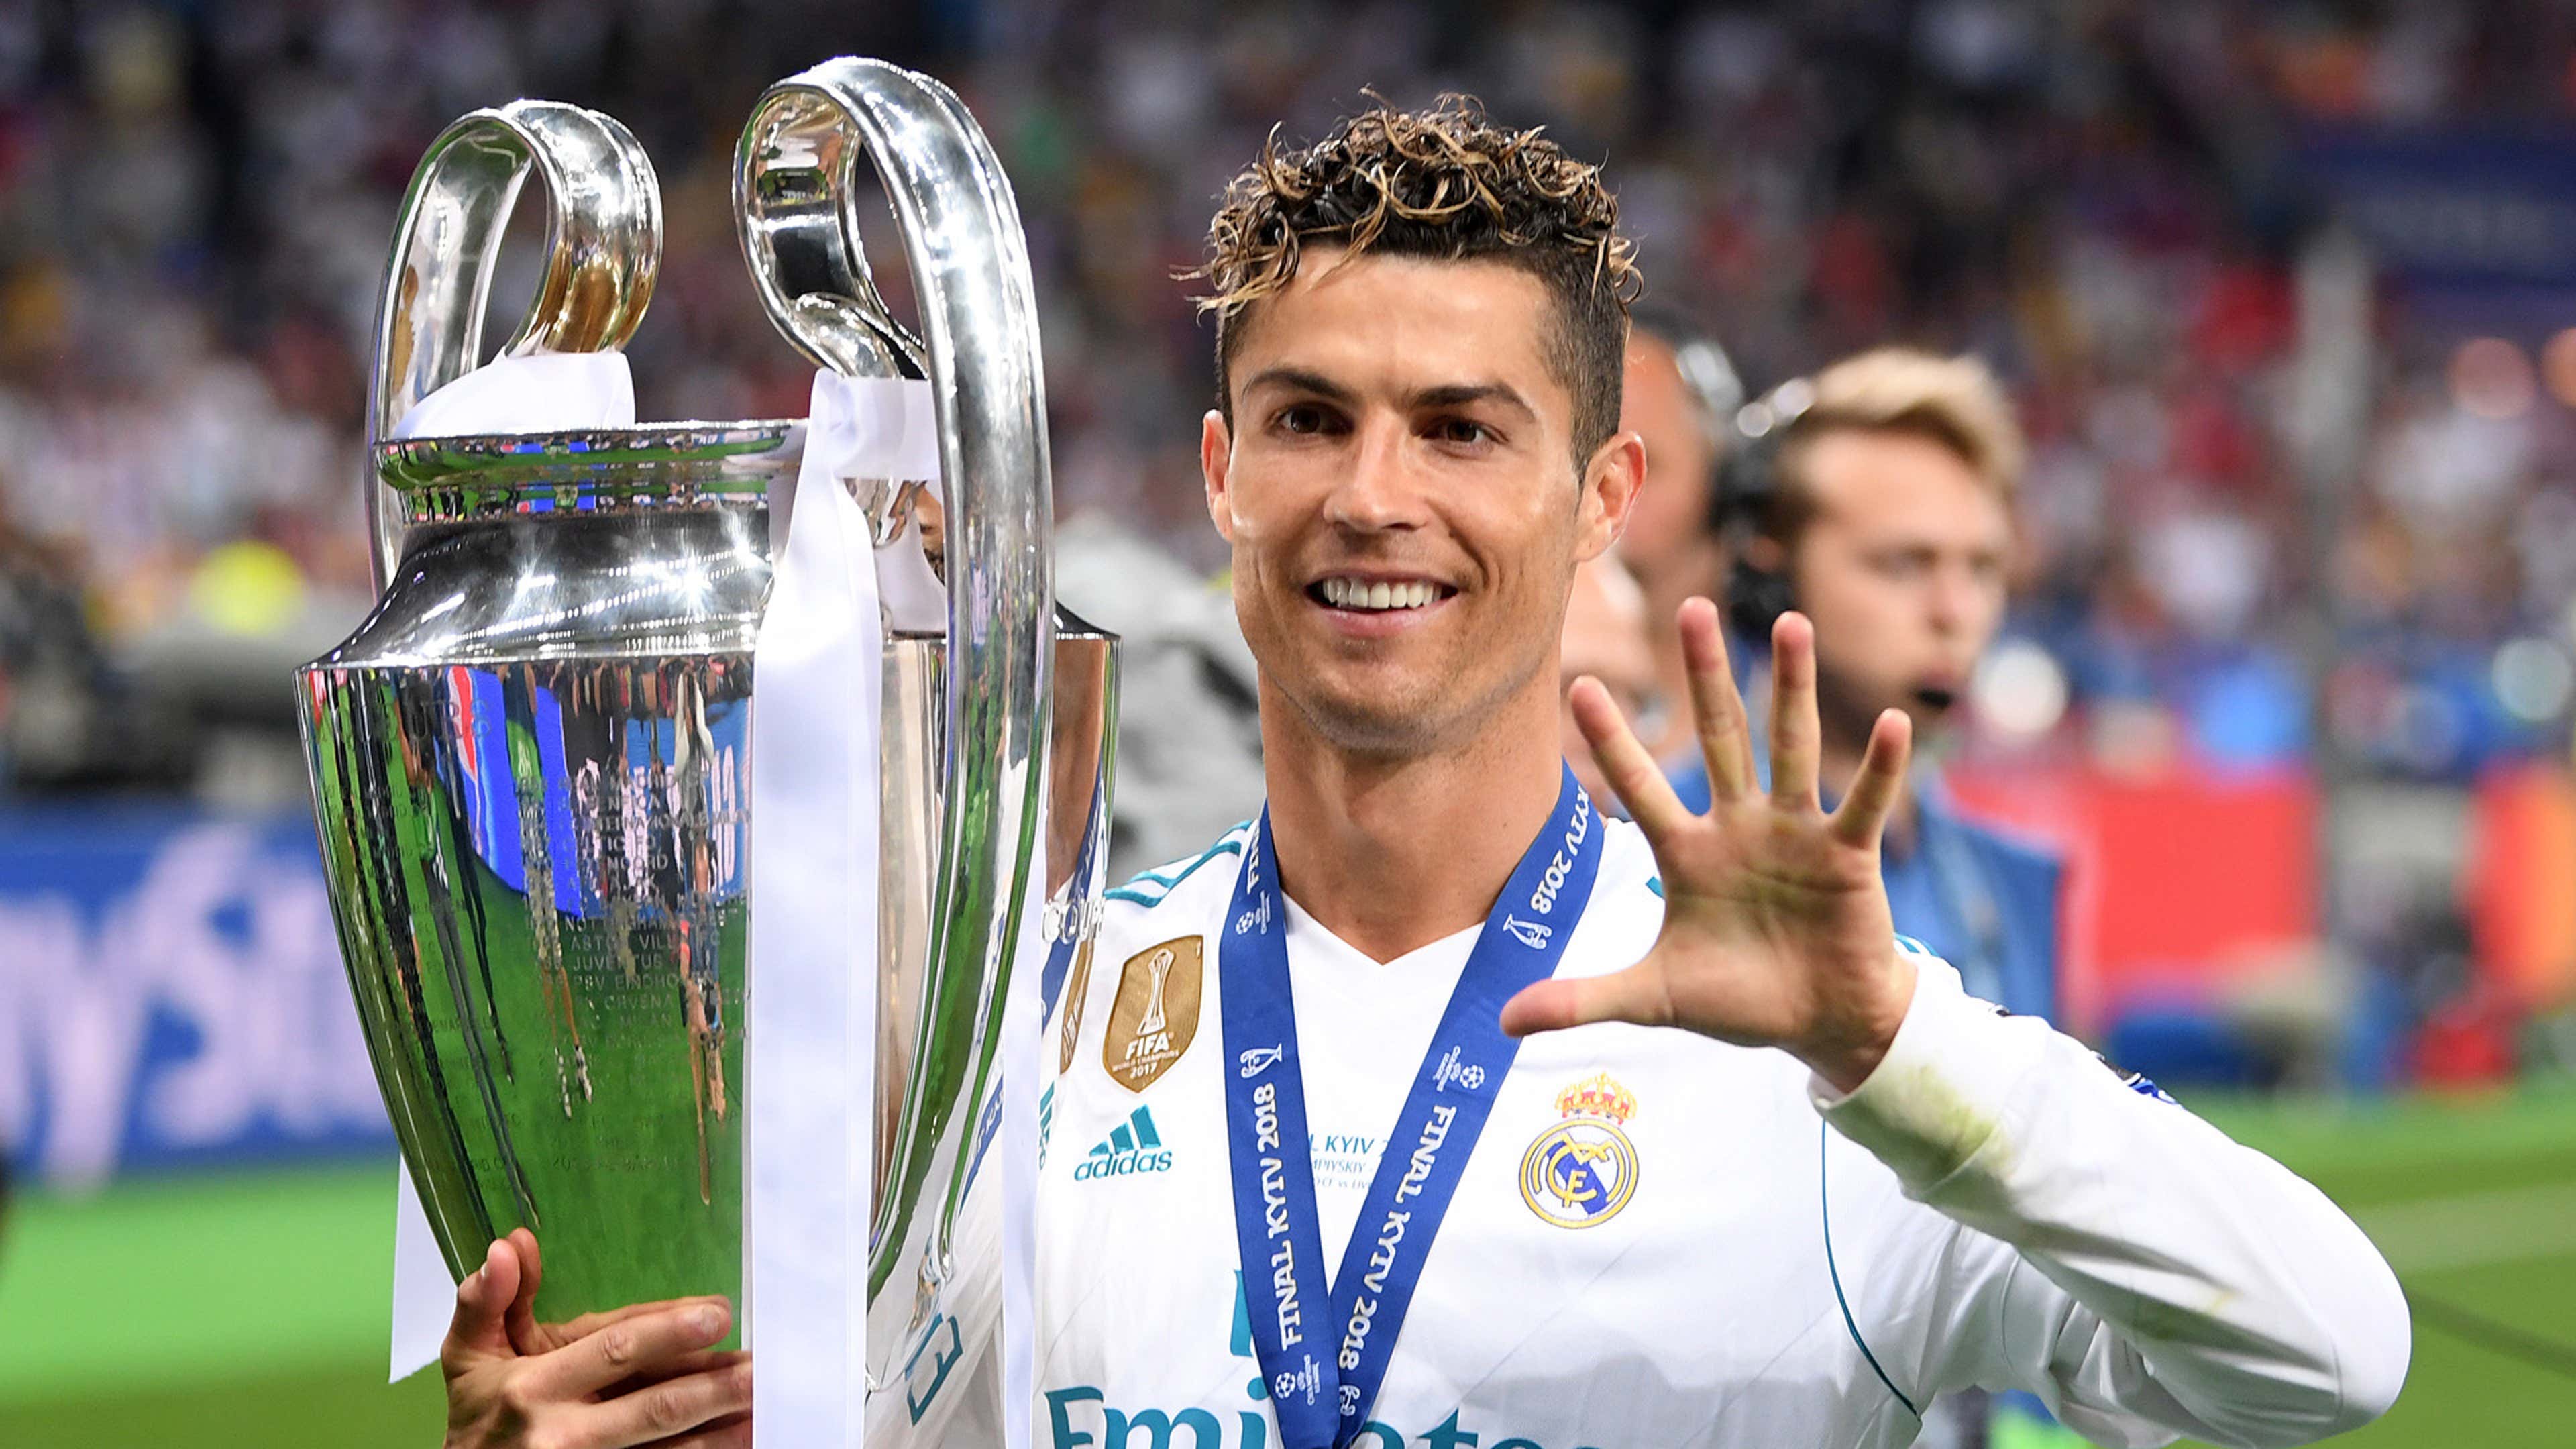 How many Champions League titles has Cristiano Ronaldo won?